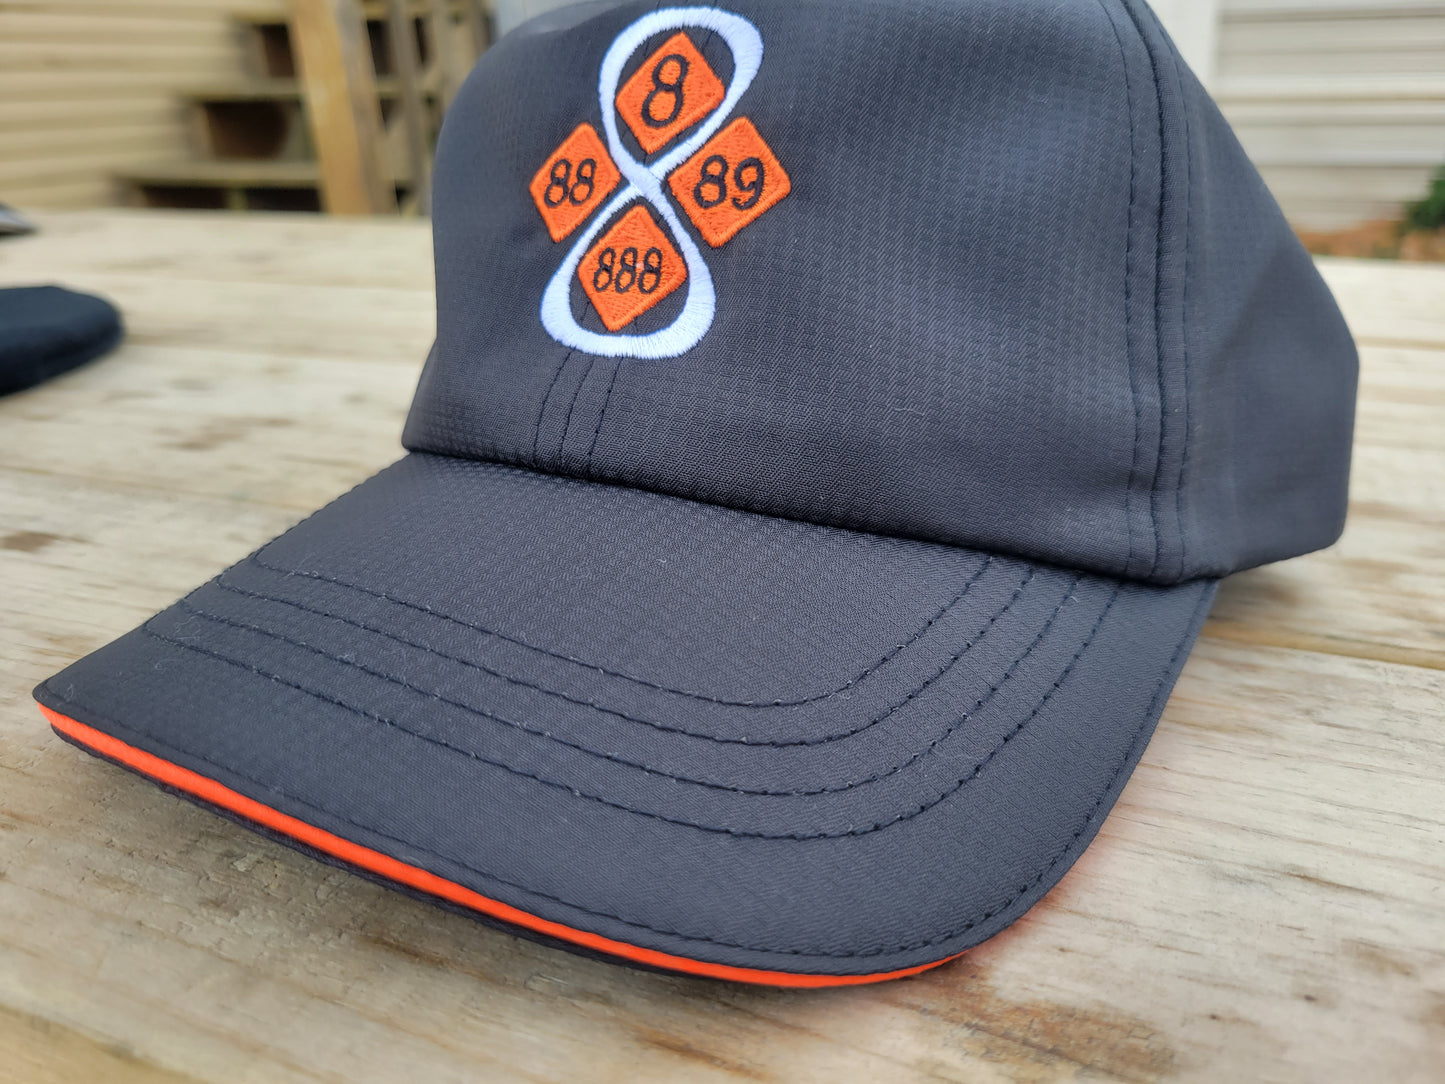 Crazy 8's hat - baseball cap - orange trim